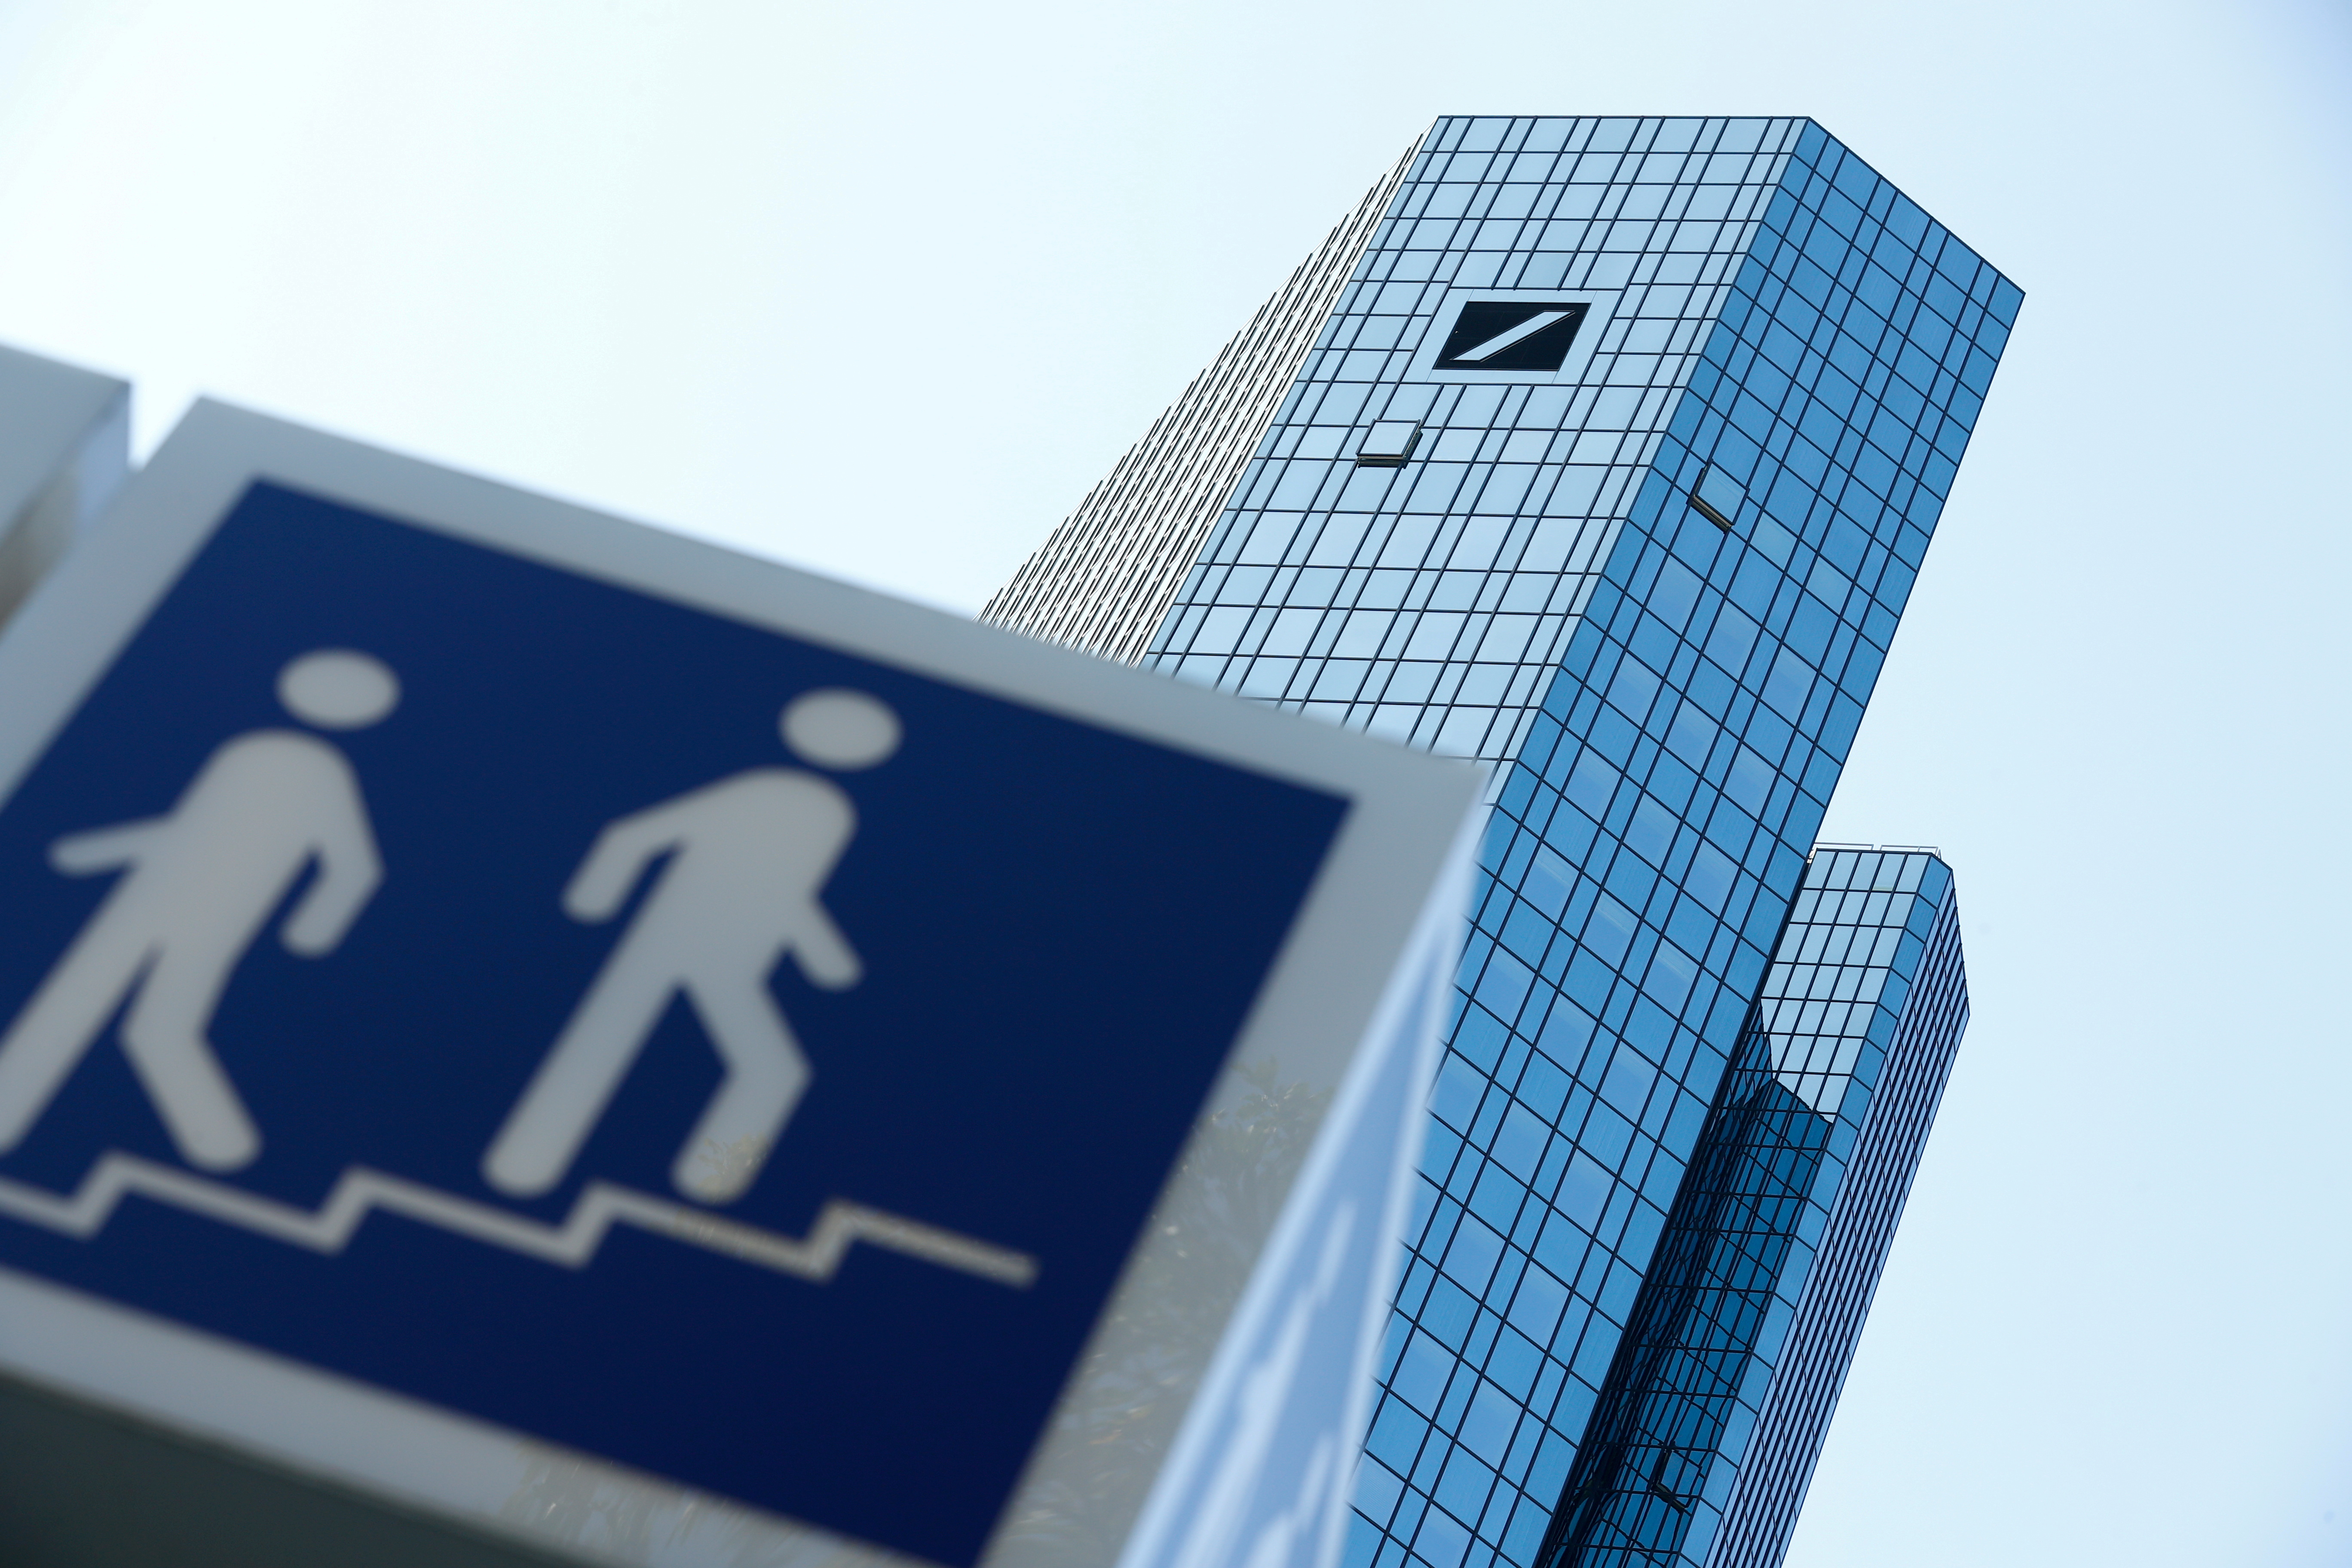 Deutsche Bank's headquarters in Frankfurt